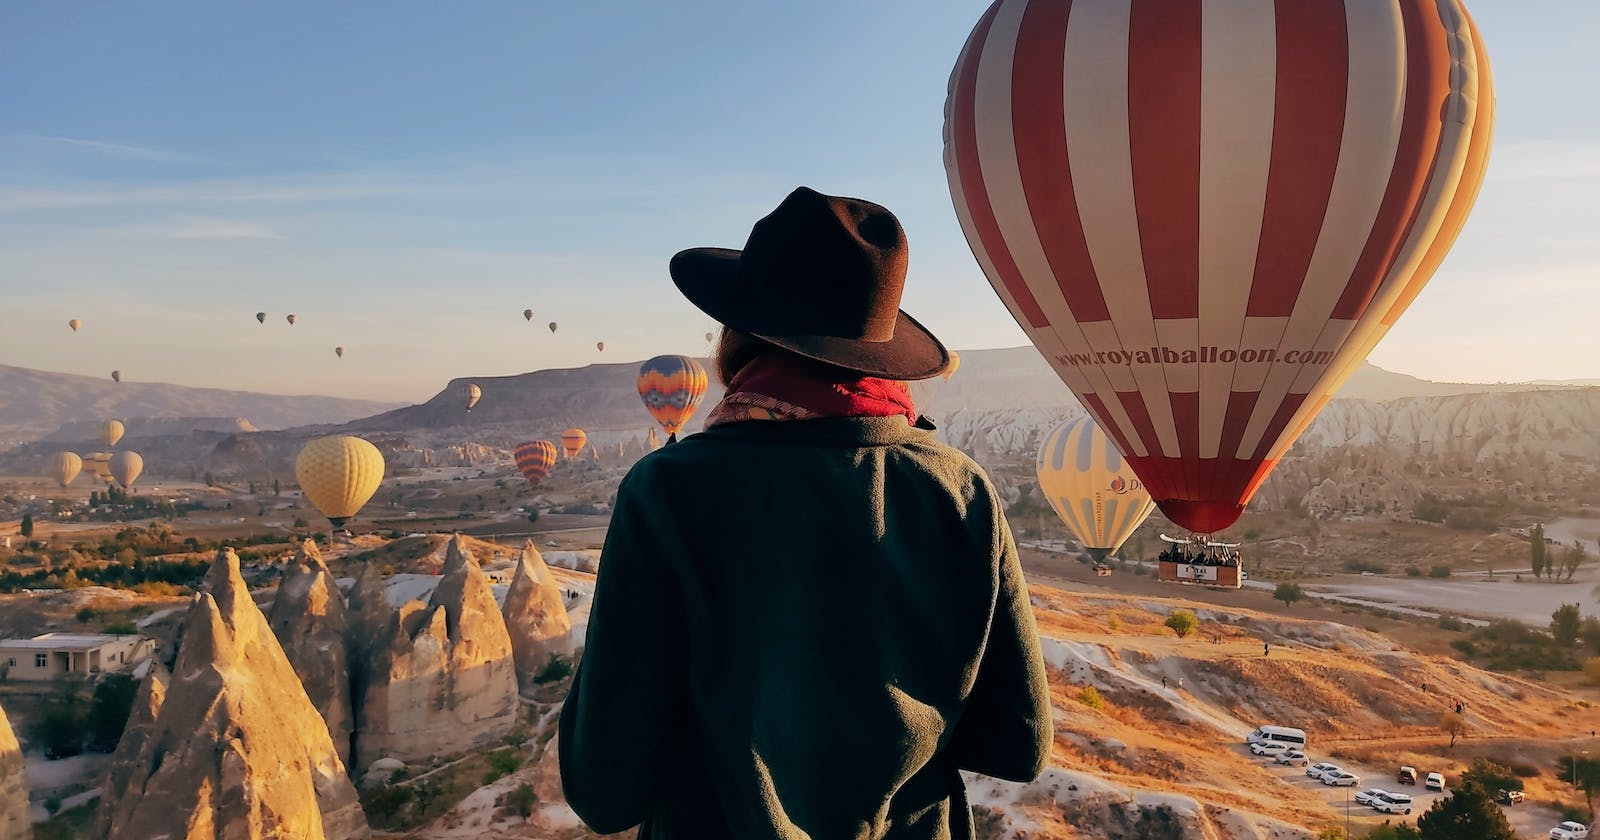 Lot balonem w Kapadocji - niezwykła przygoda